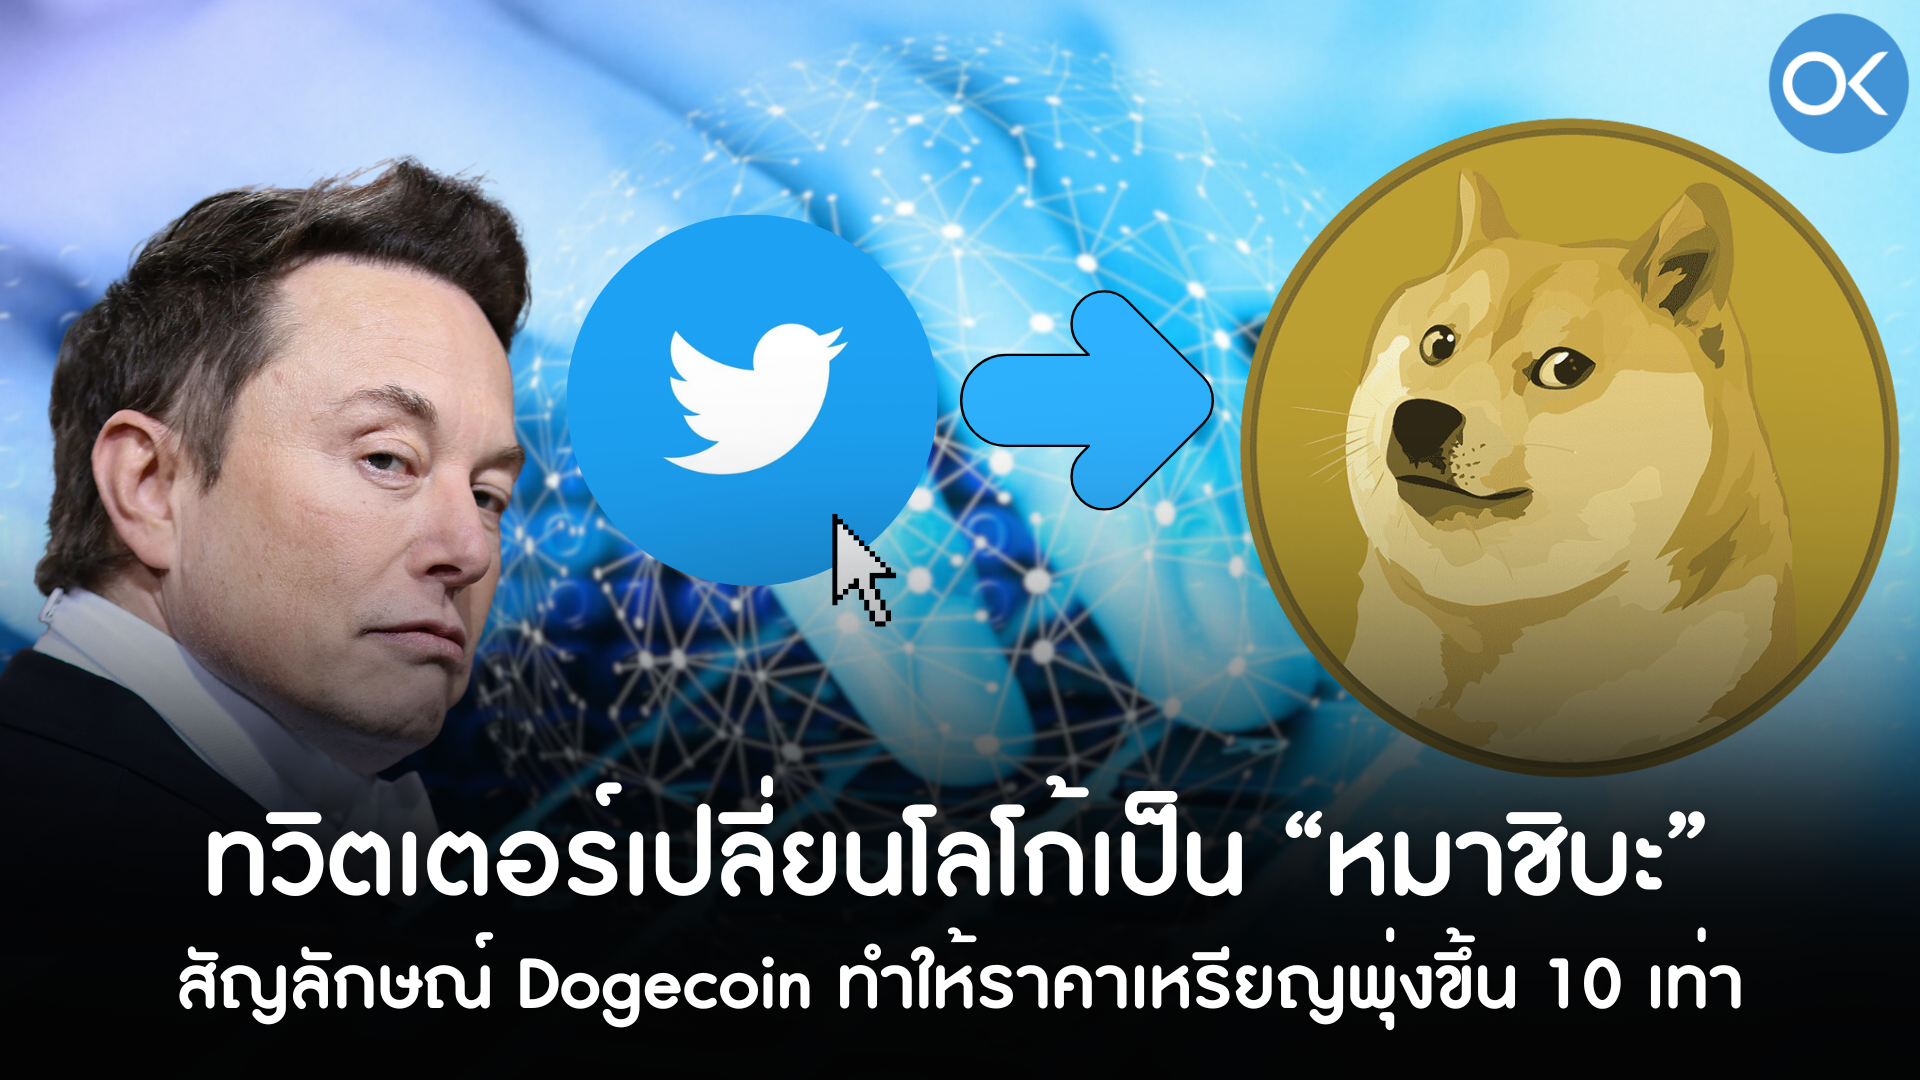 ลาก่อน “นกฟ้า” ทวิตเตอร์เปลี่ยนโลโก้เป็น “หมาชิบะ” สัญลักษณ์ Dogecoin ทำให้ราคาเหรียญพุ่งขึ้น 10 เท่า